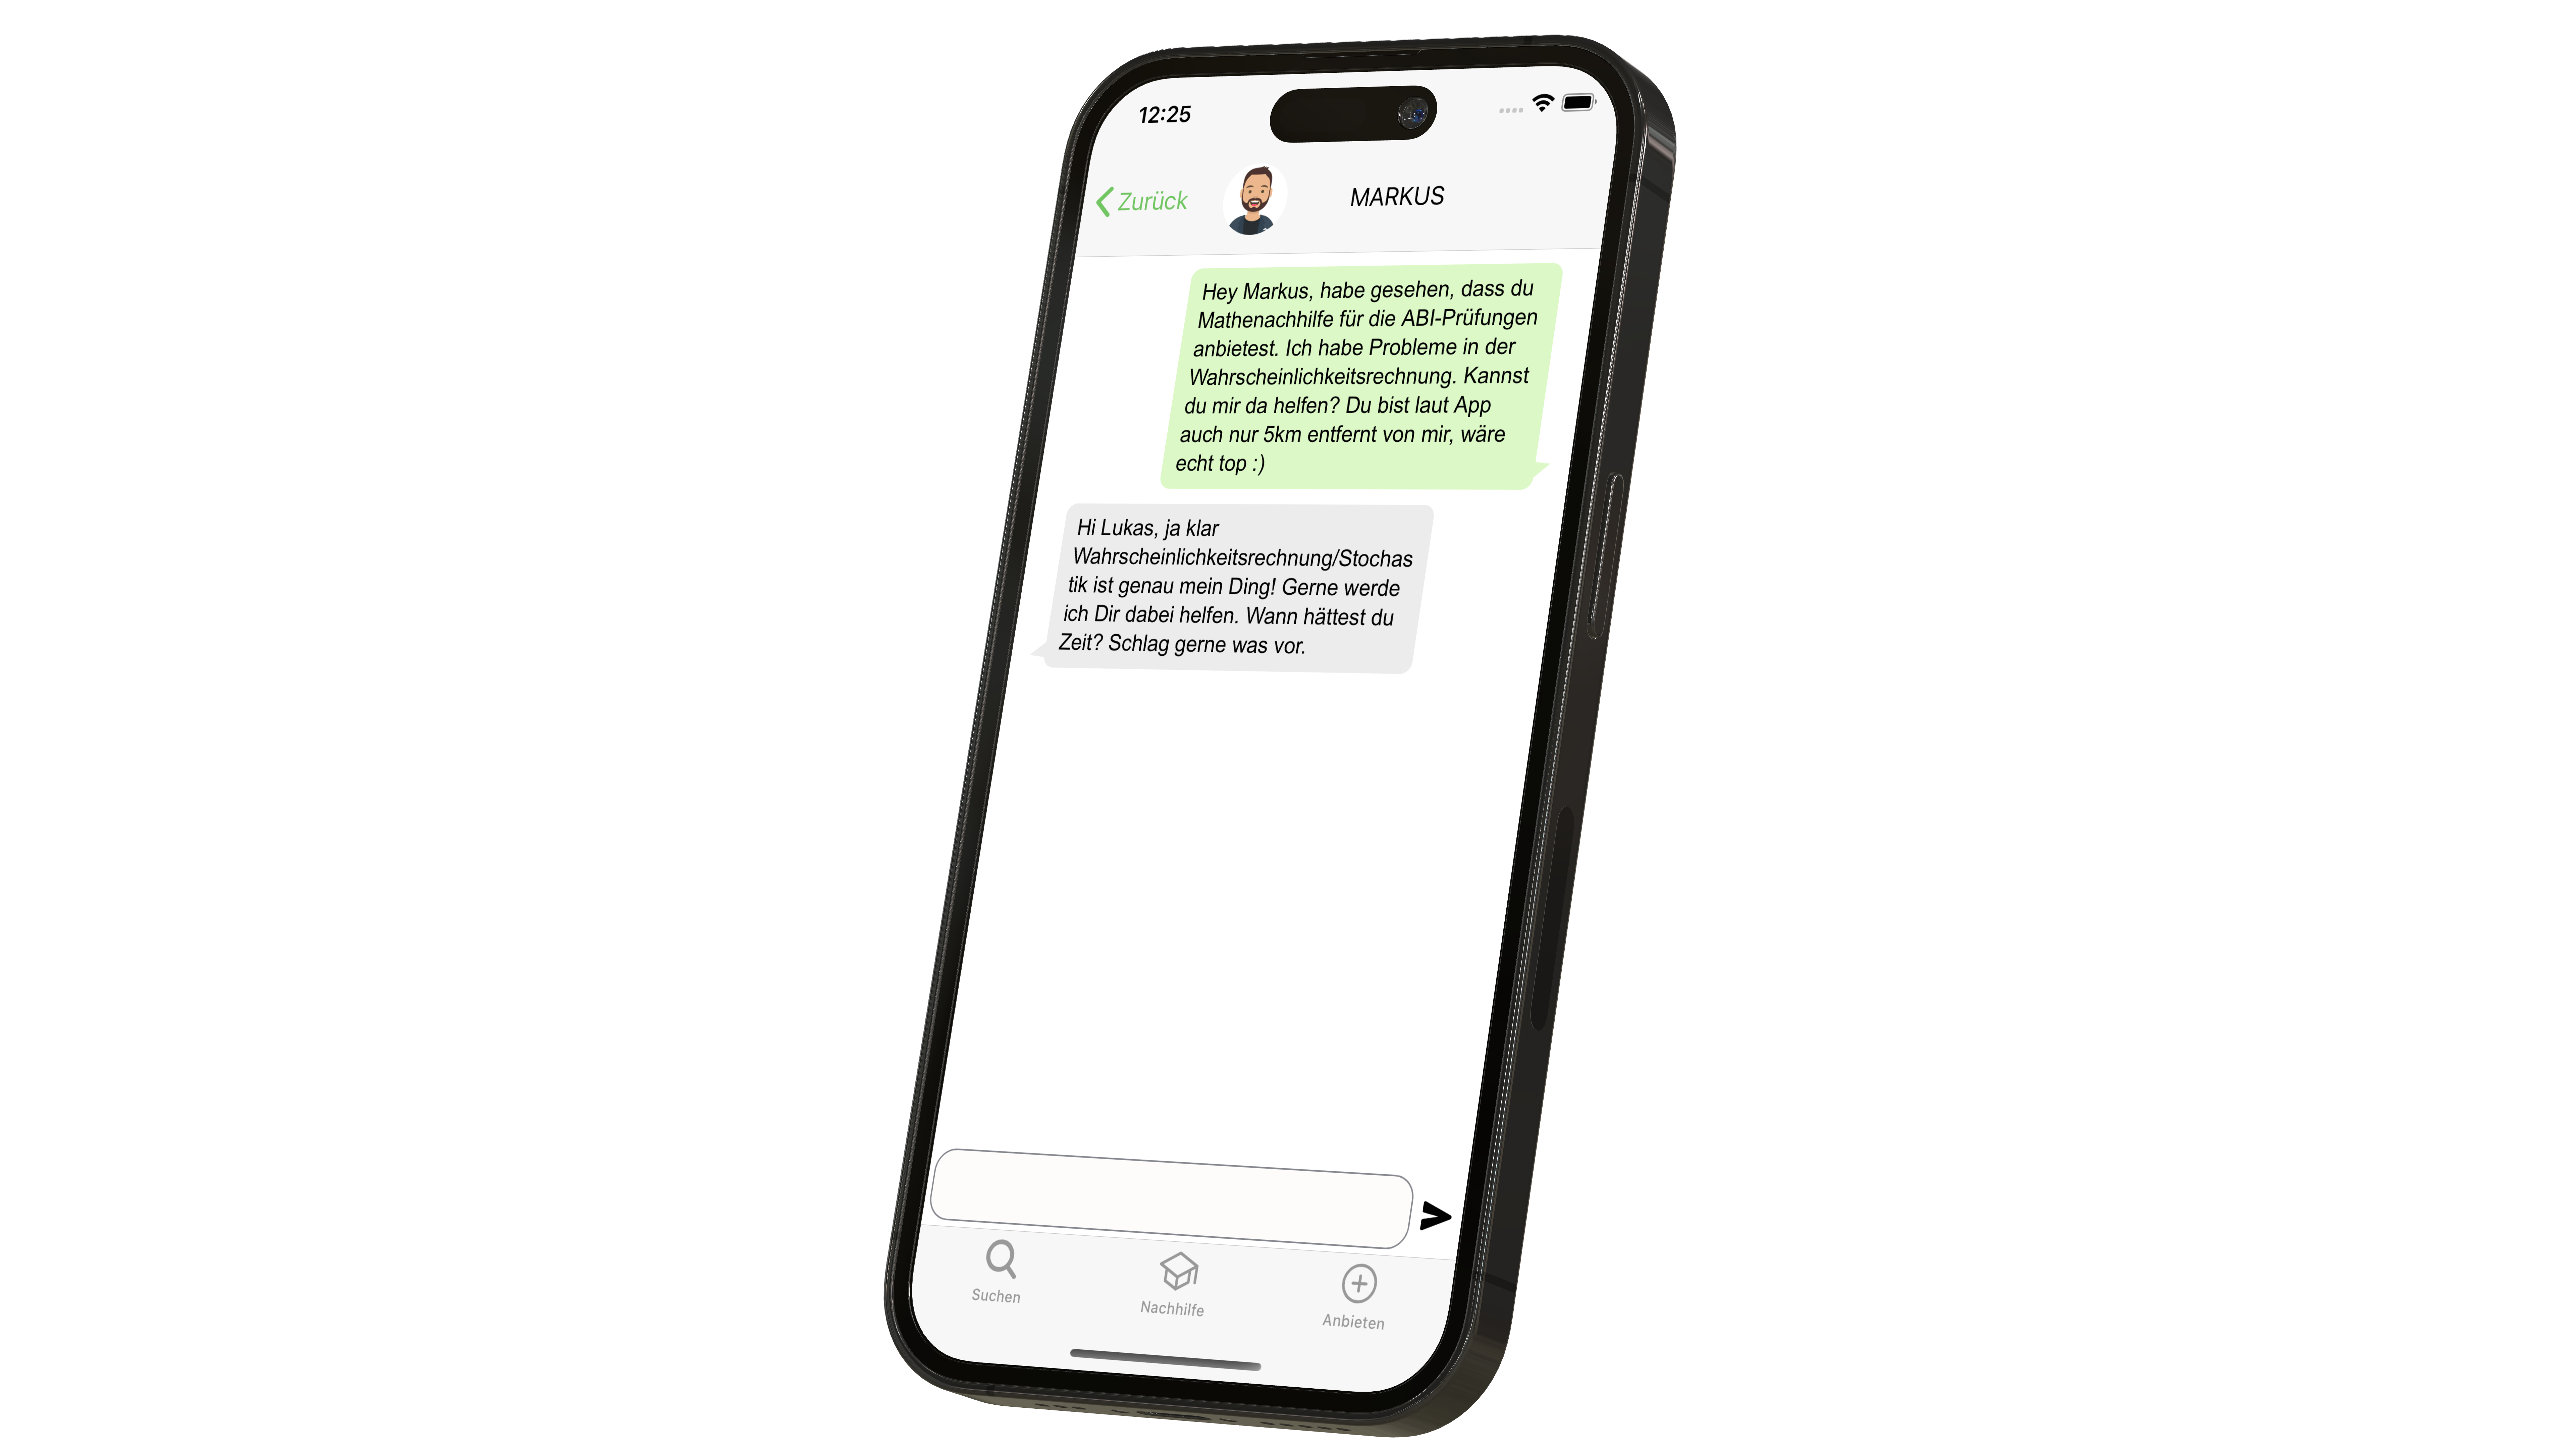 iPhone zeigt die Chat Seite der Nachhilferadar App